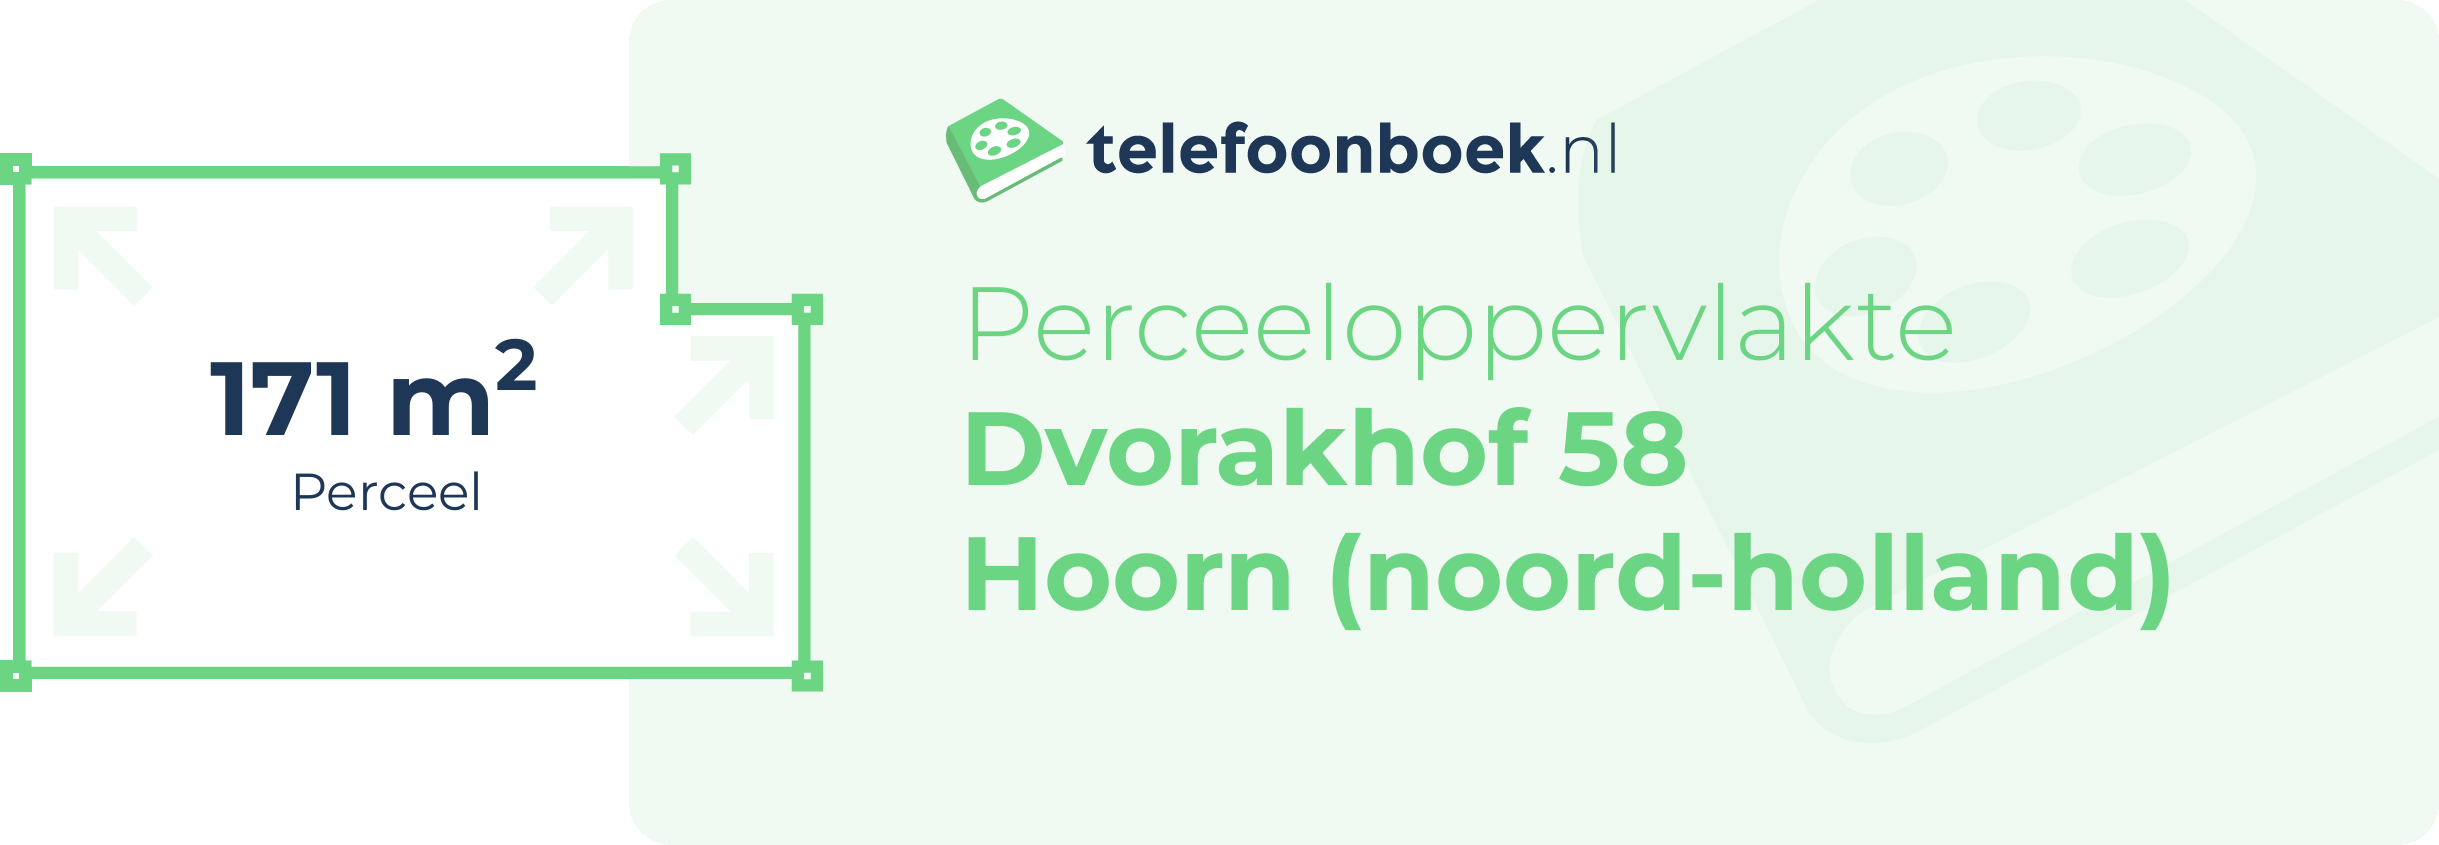 Perceeloppervlakte Dvorakhof 58 Hoorn (Noord-Holland)